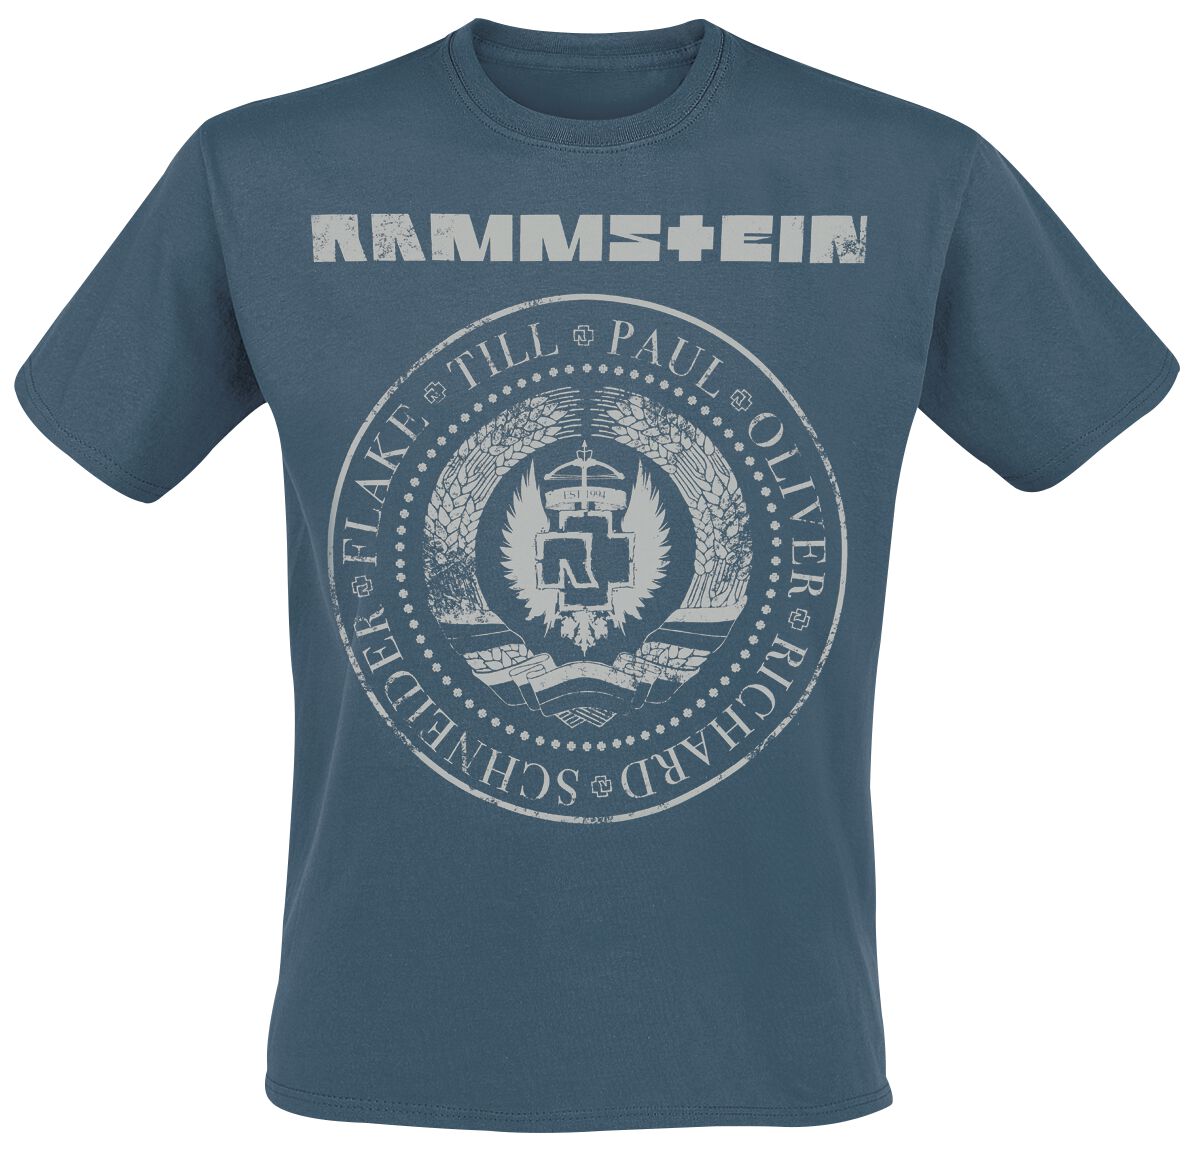 Rammstein T-Shirt - Est. 1994 - S bis XXL - für Männer - Größe XXL - blau  - Lizenziertes Merchandise!